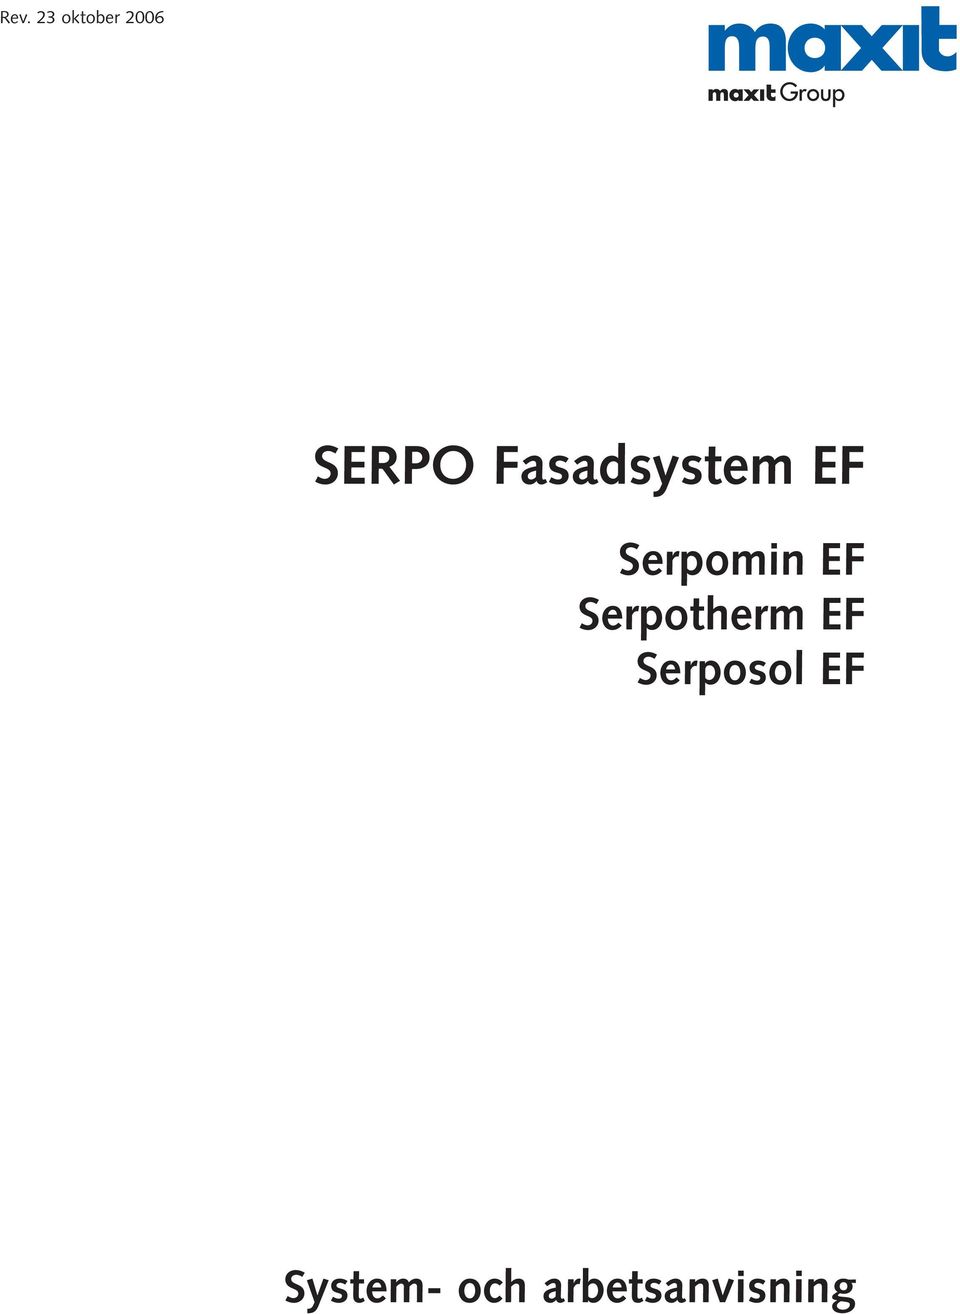 Serpotherm EF